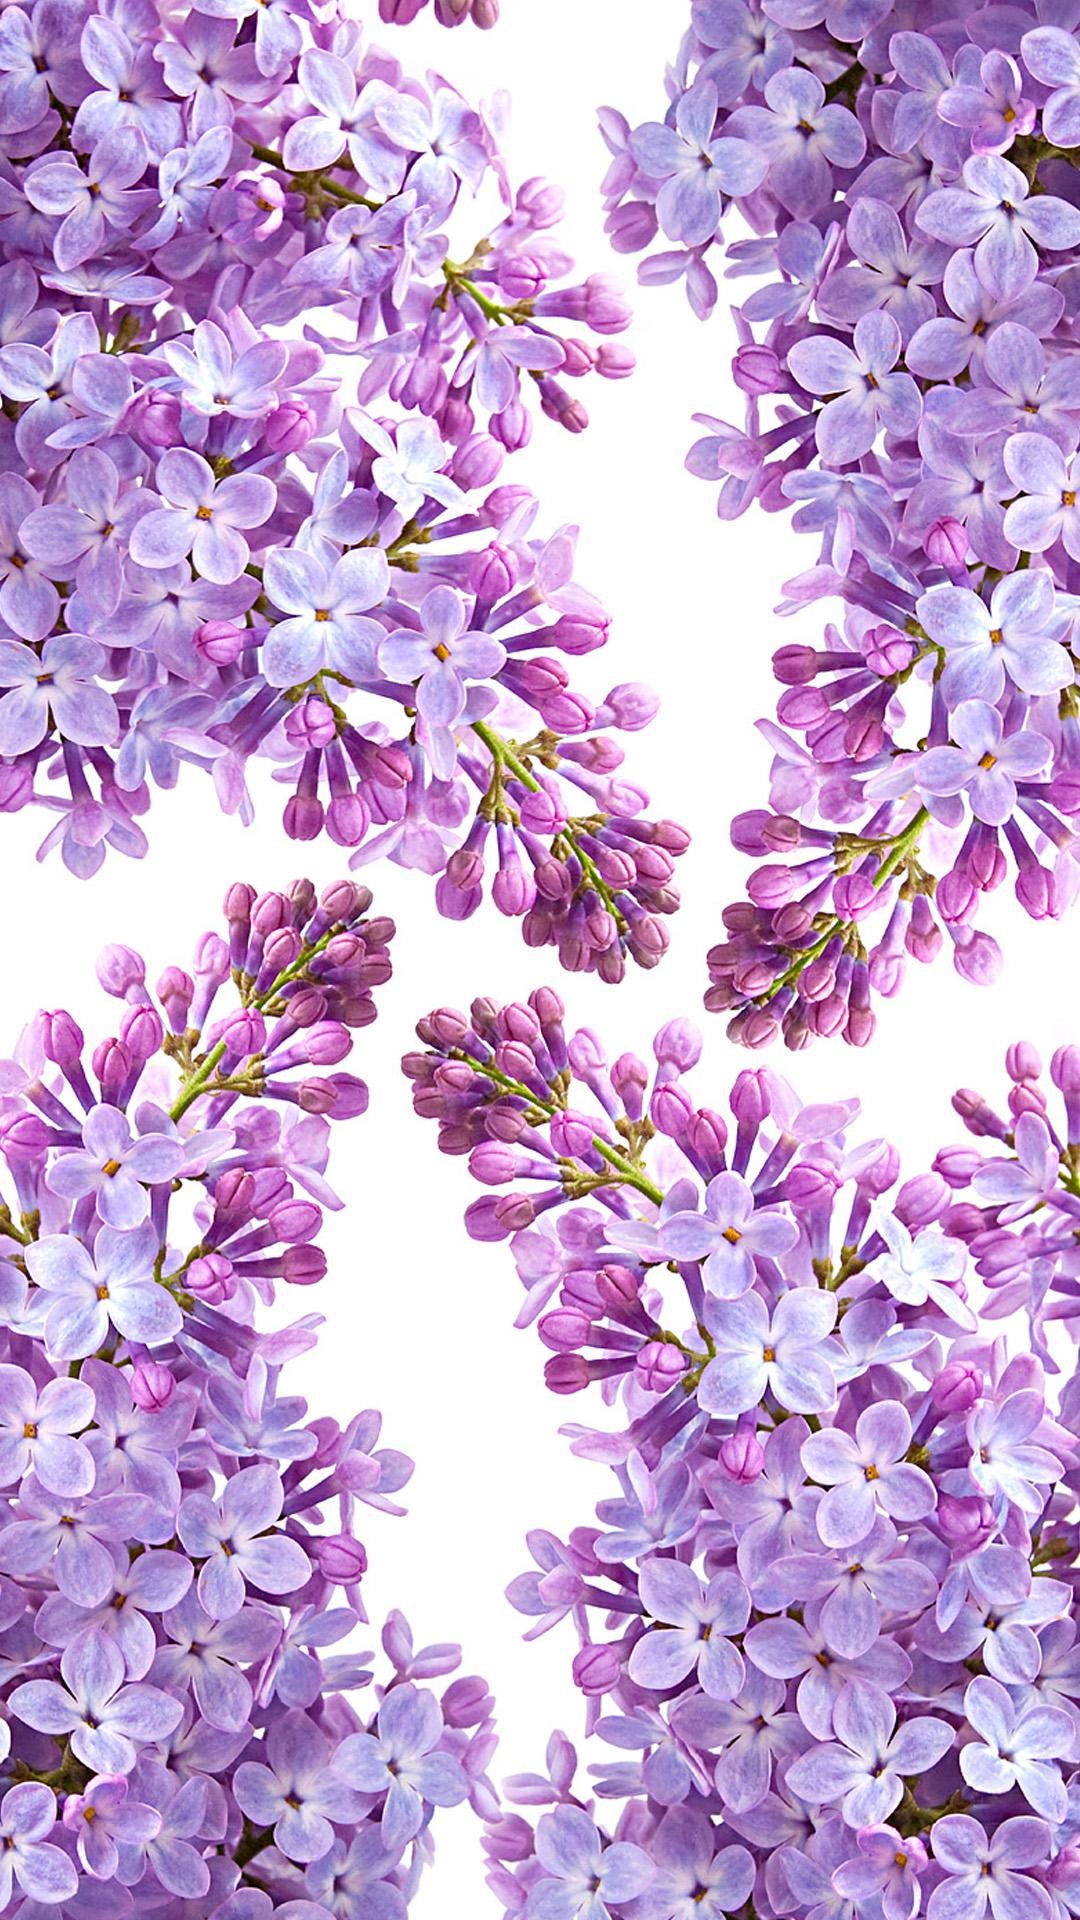 lilac wallpaper,lilac,lavender,violet,purple,lilac